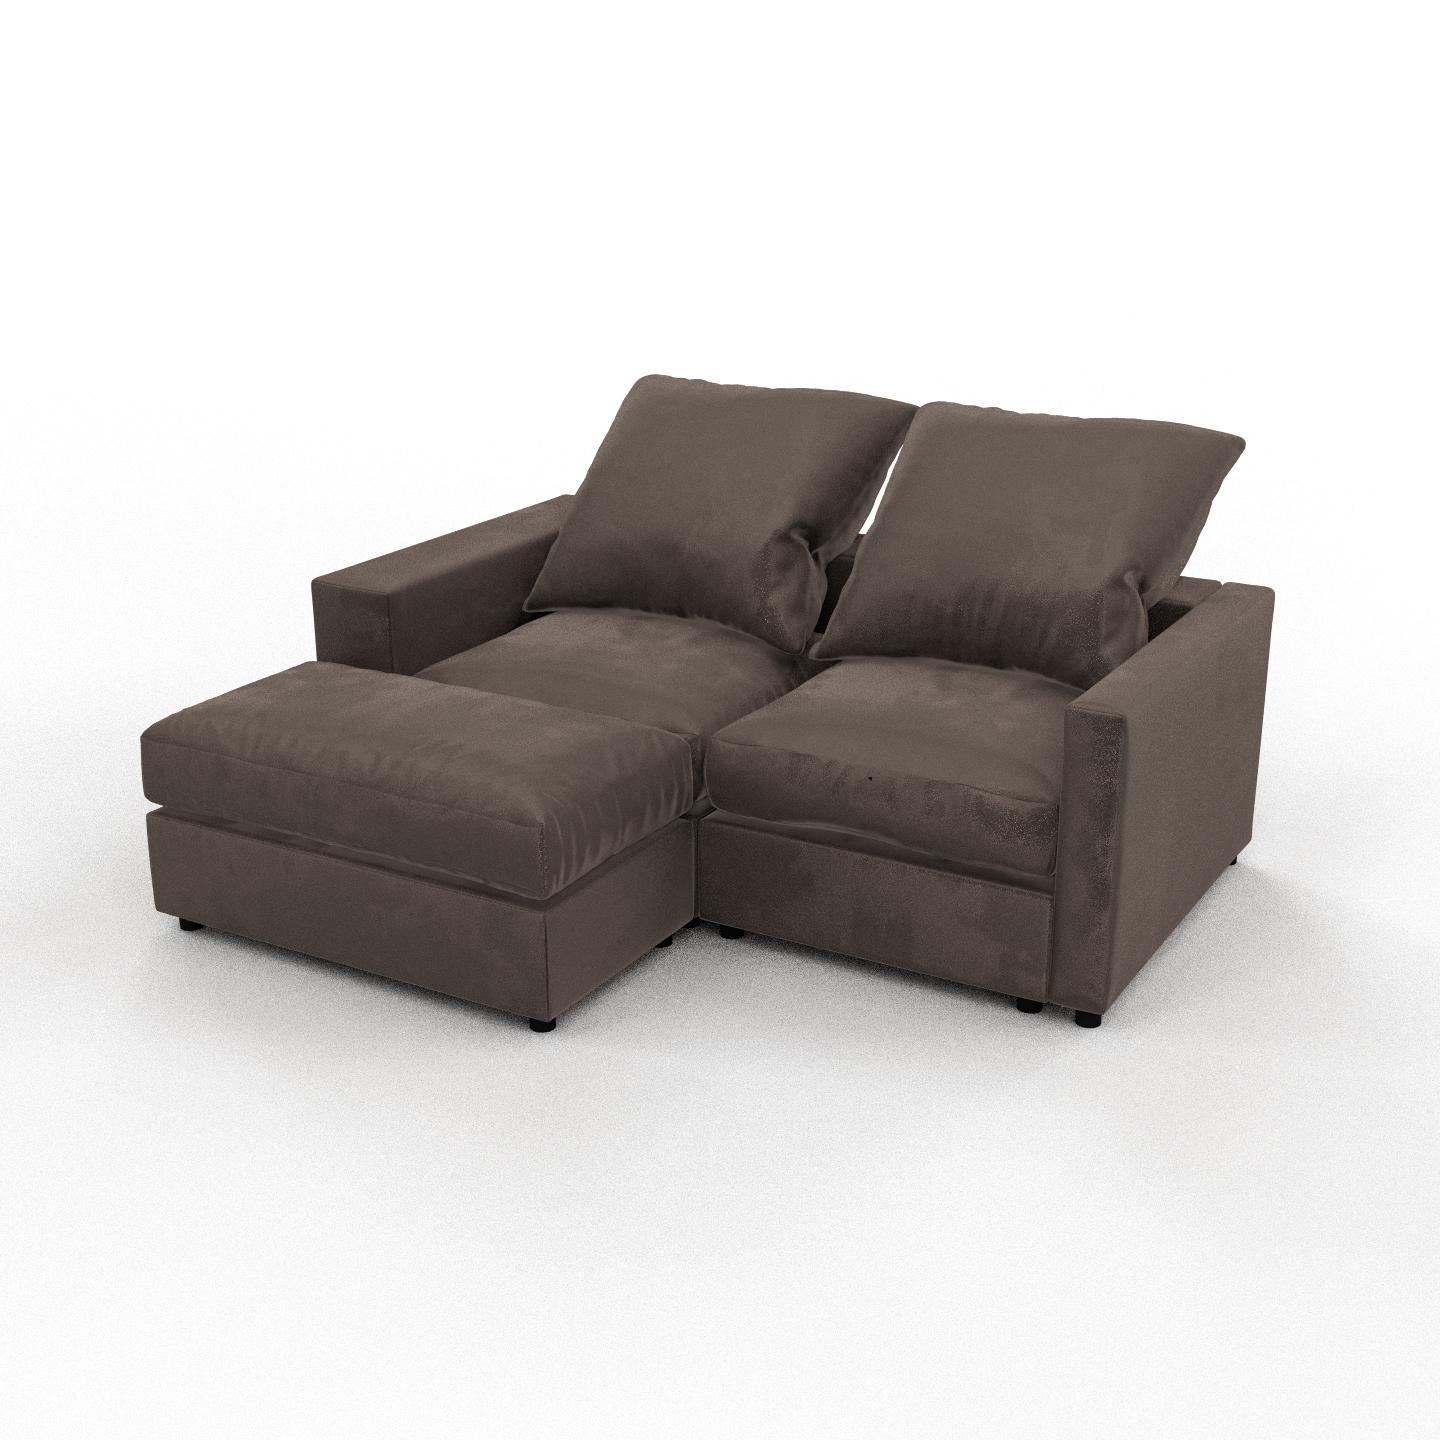 MYCS Sofa 2-Sitzer Samt Taupegrau Samt - Elegantes, gemütliches 2-Sitzer Sofa: Hochwertige Qualität, einzigartiges Design - 192 x 97 x 156 cm,...